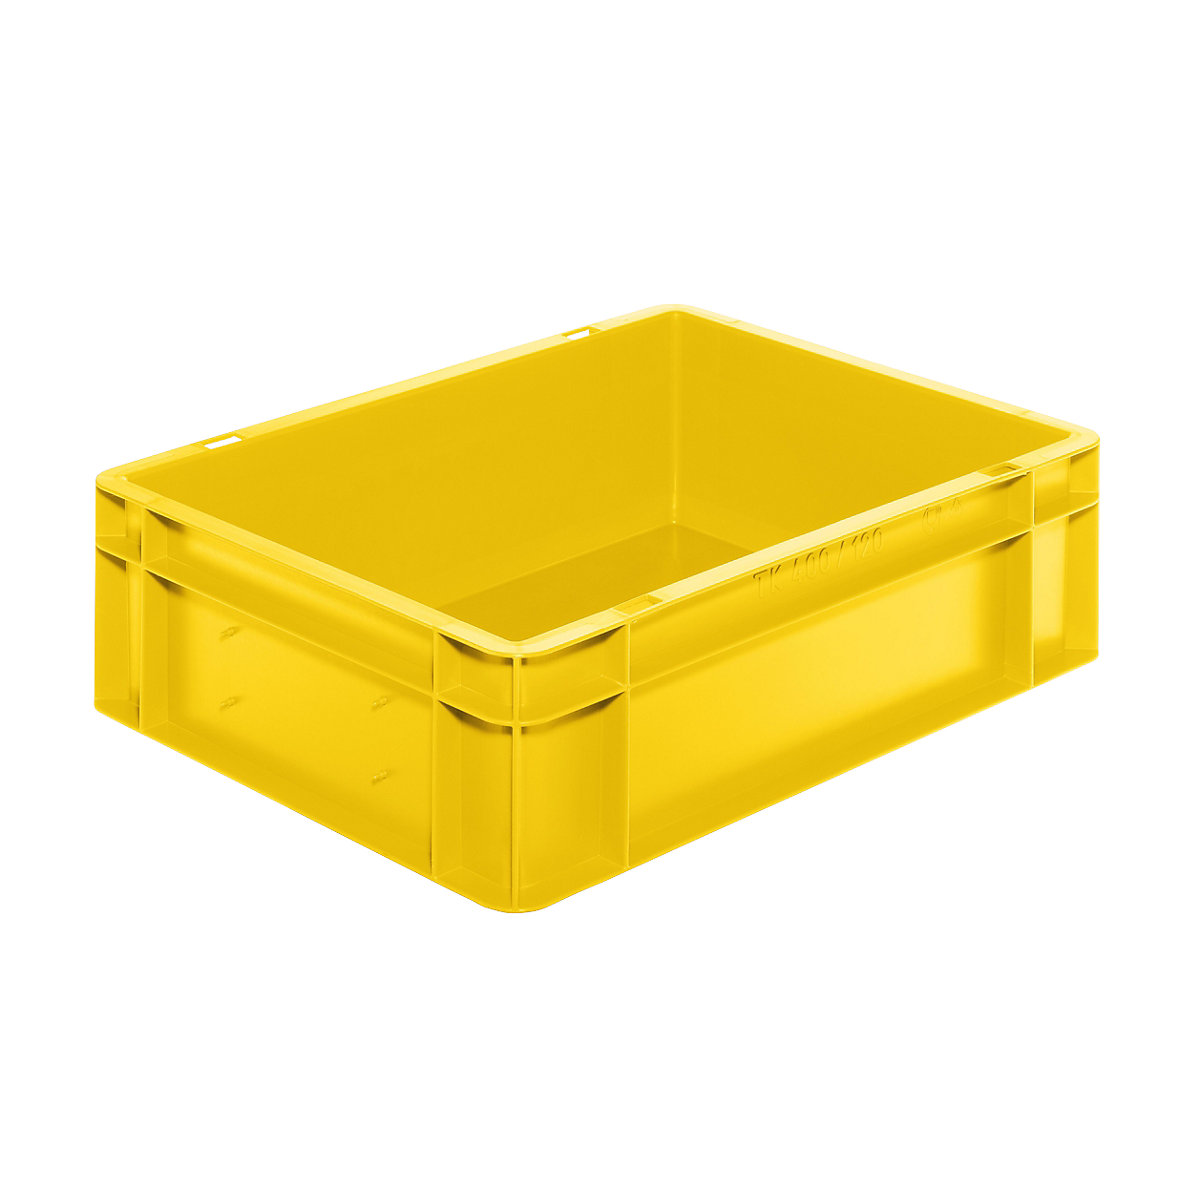 Stapelbak van euroformaat, wanden en bodem dicht, l x b x h = 400 x 300 x 120 mm, geel, VE = 5 stuks-7